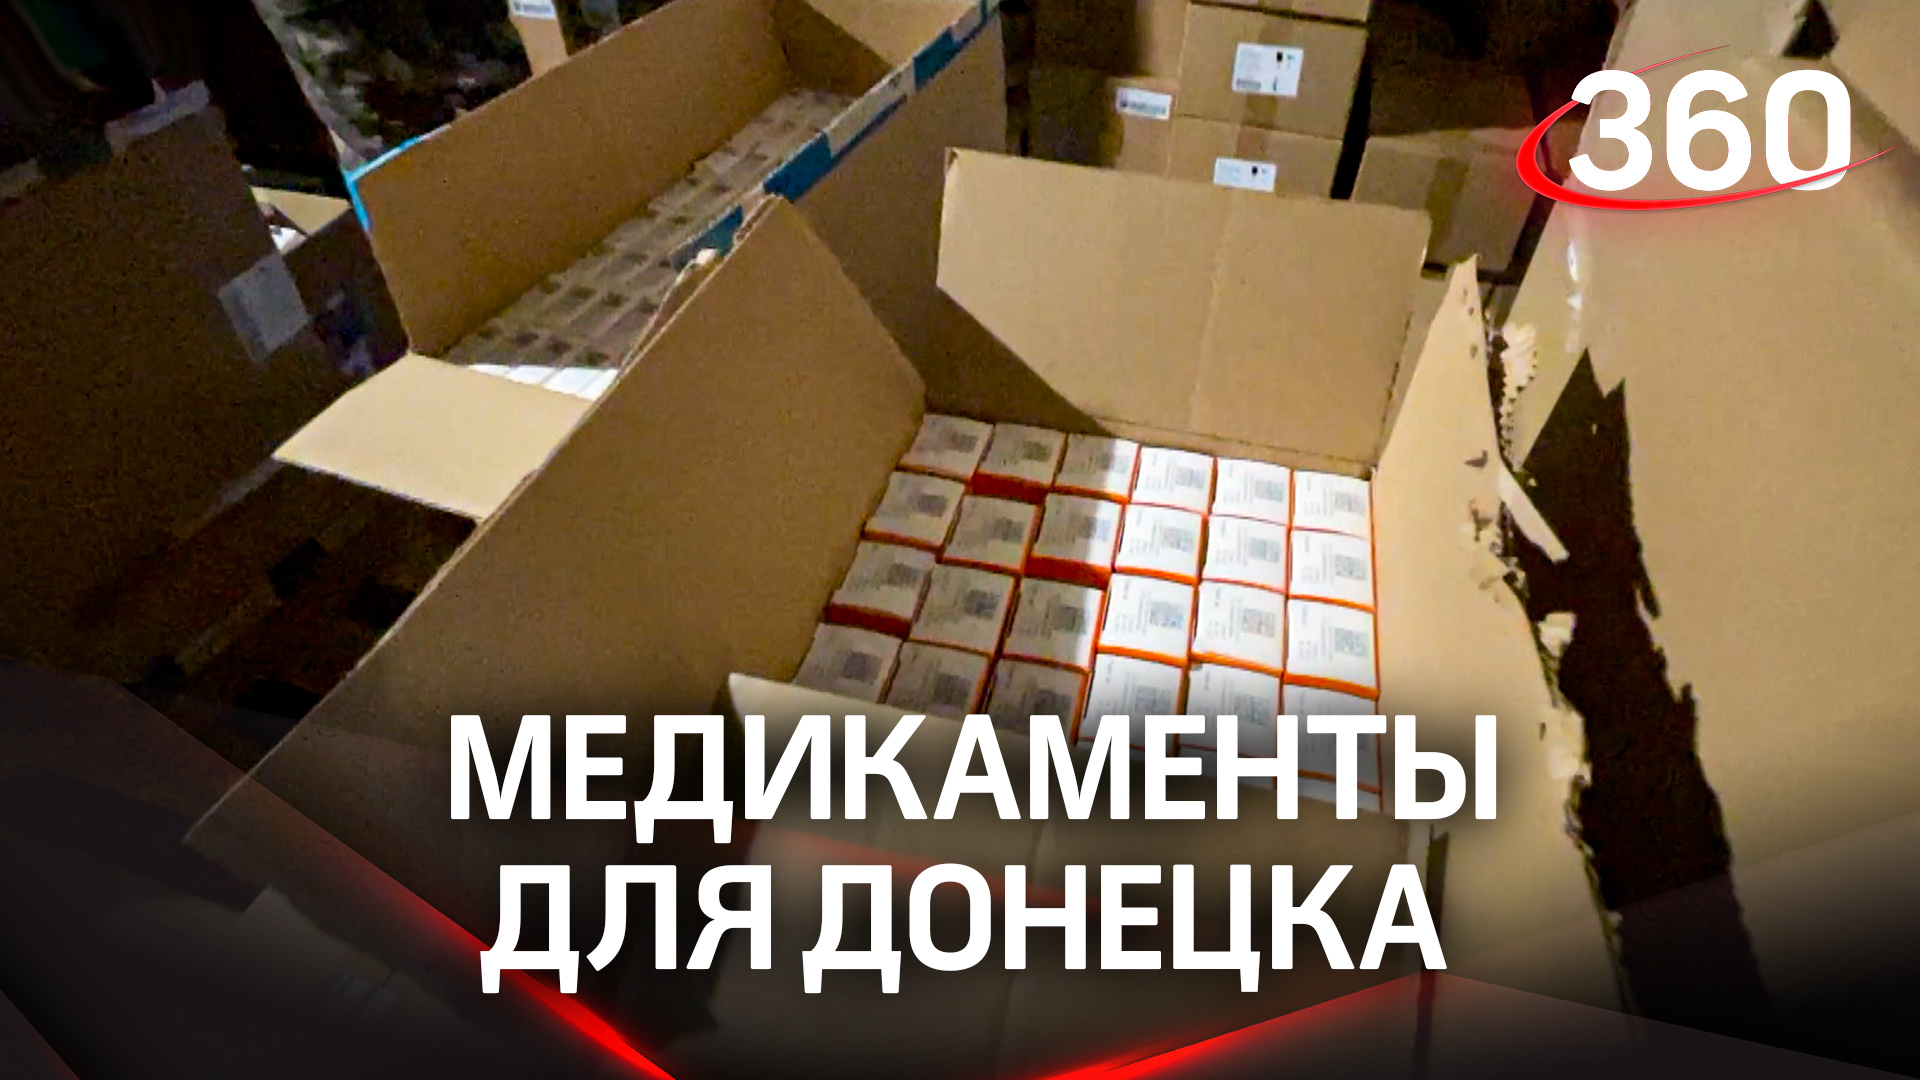 Фонд «Великое Отечество» привез в Донецк медикаменты для фронта